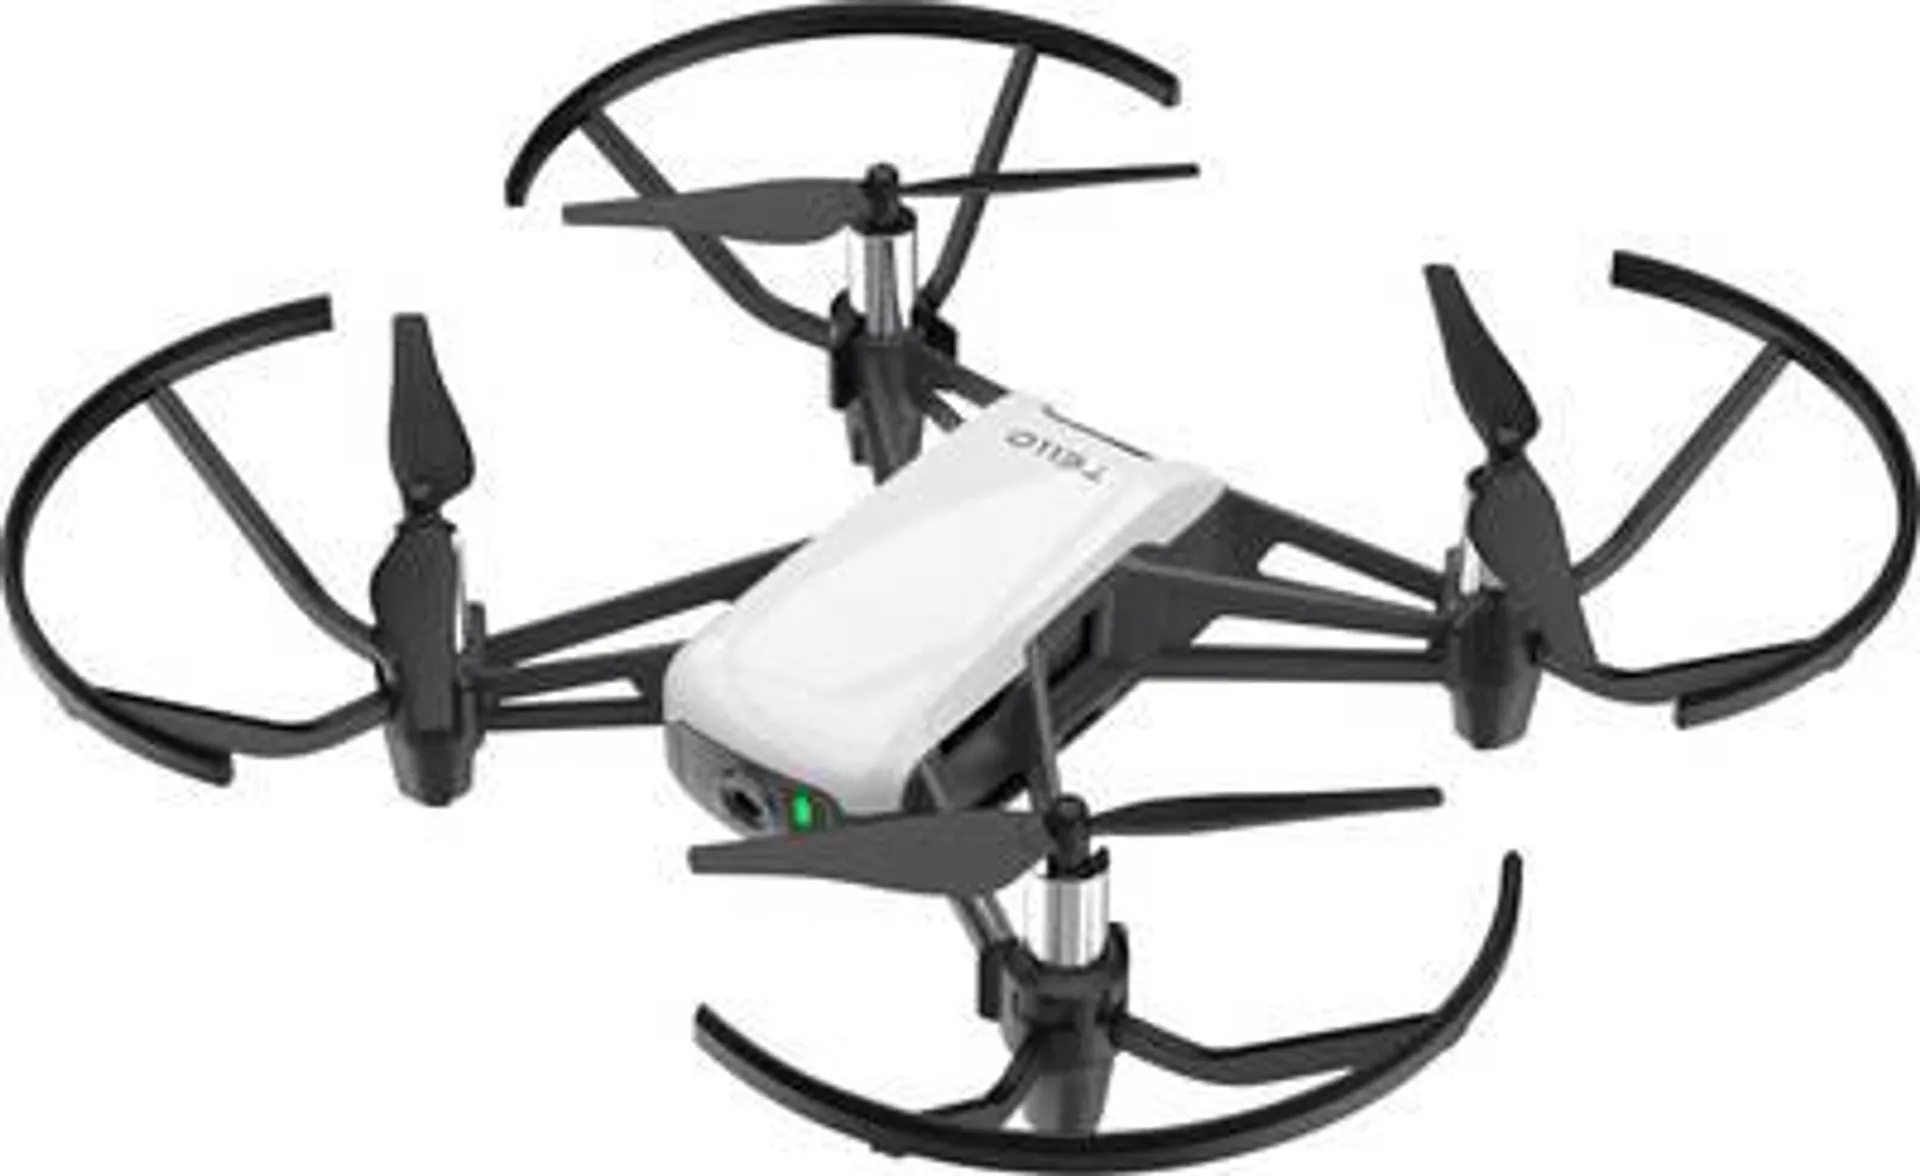 Ryze Tech Tello Quadcopter RtF Camera drone